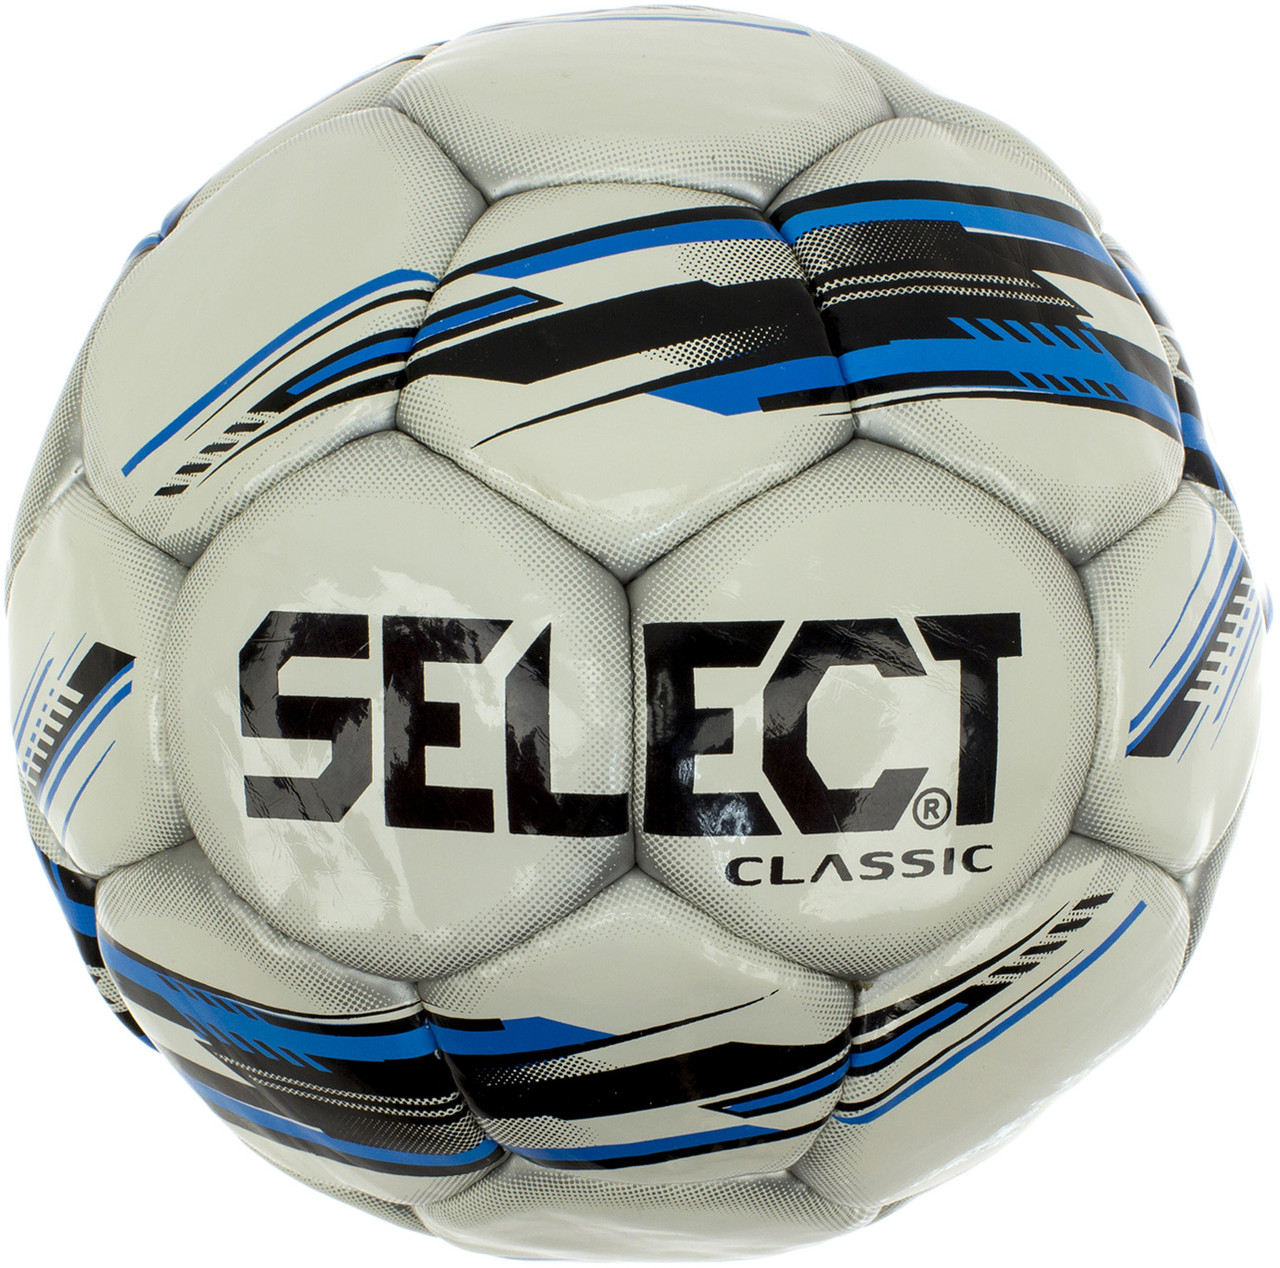 М'яч футбольний Select Classic біло-блакитний